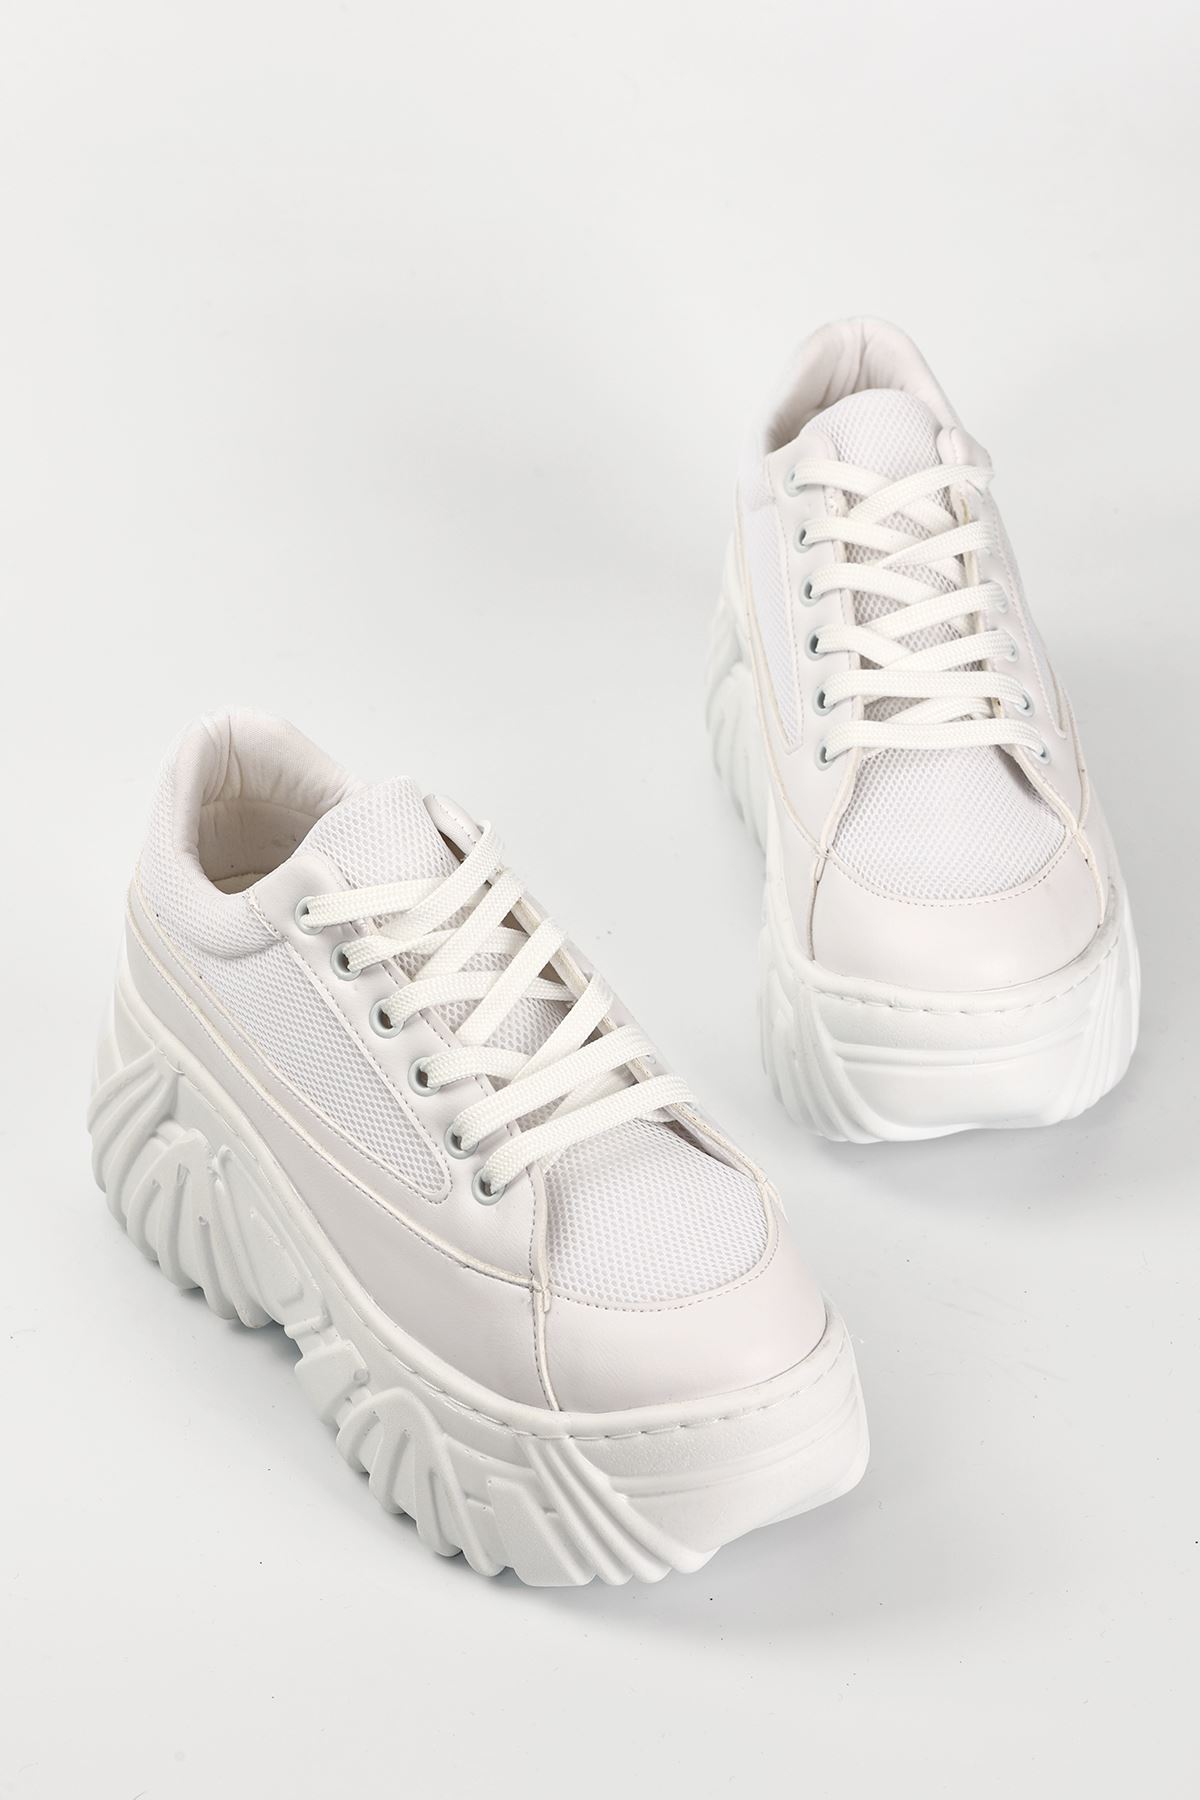 Erma File Detaylı Bağcıklı Kadın Spor Ayakkabı Beyaz